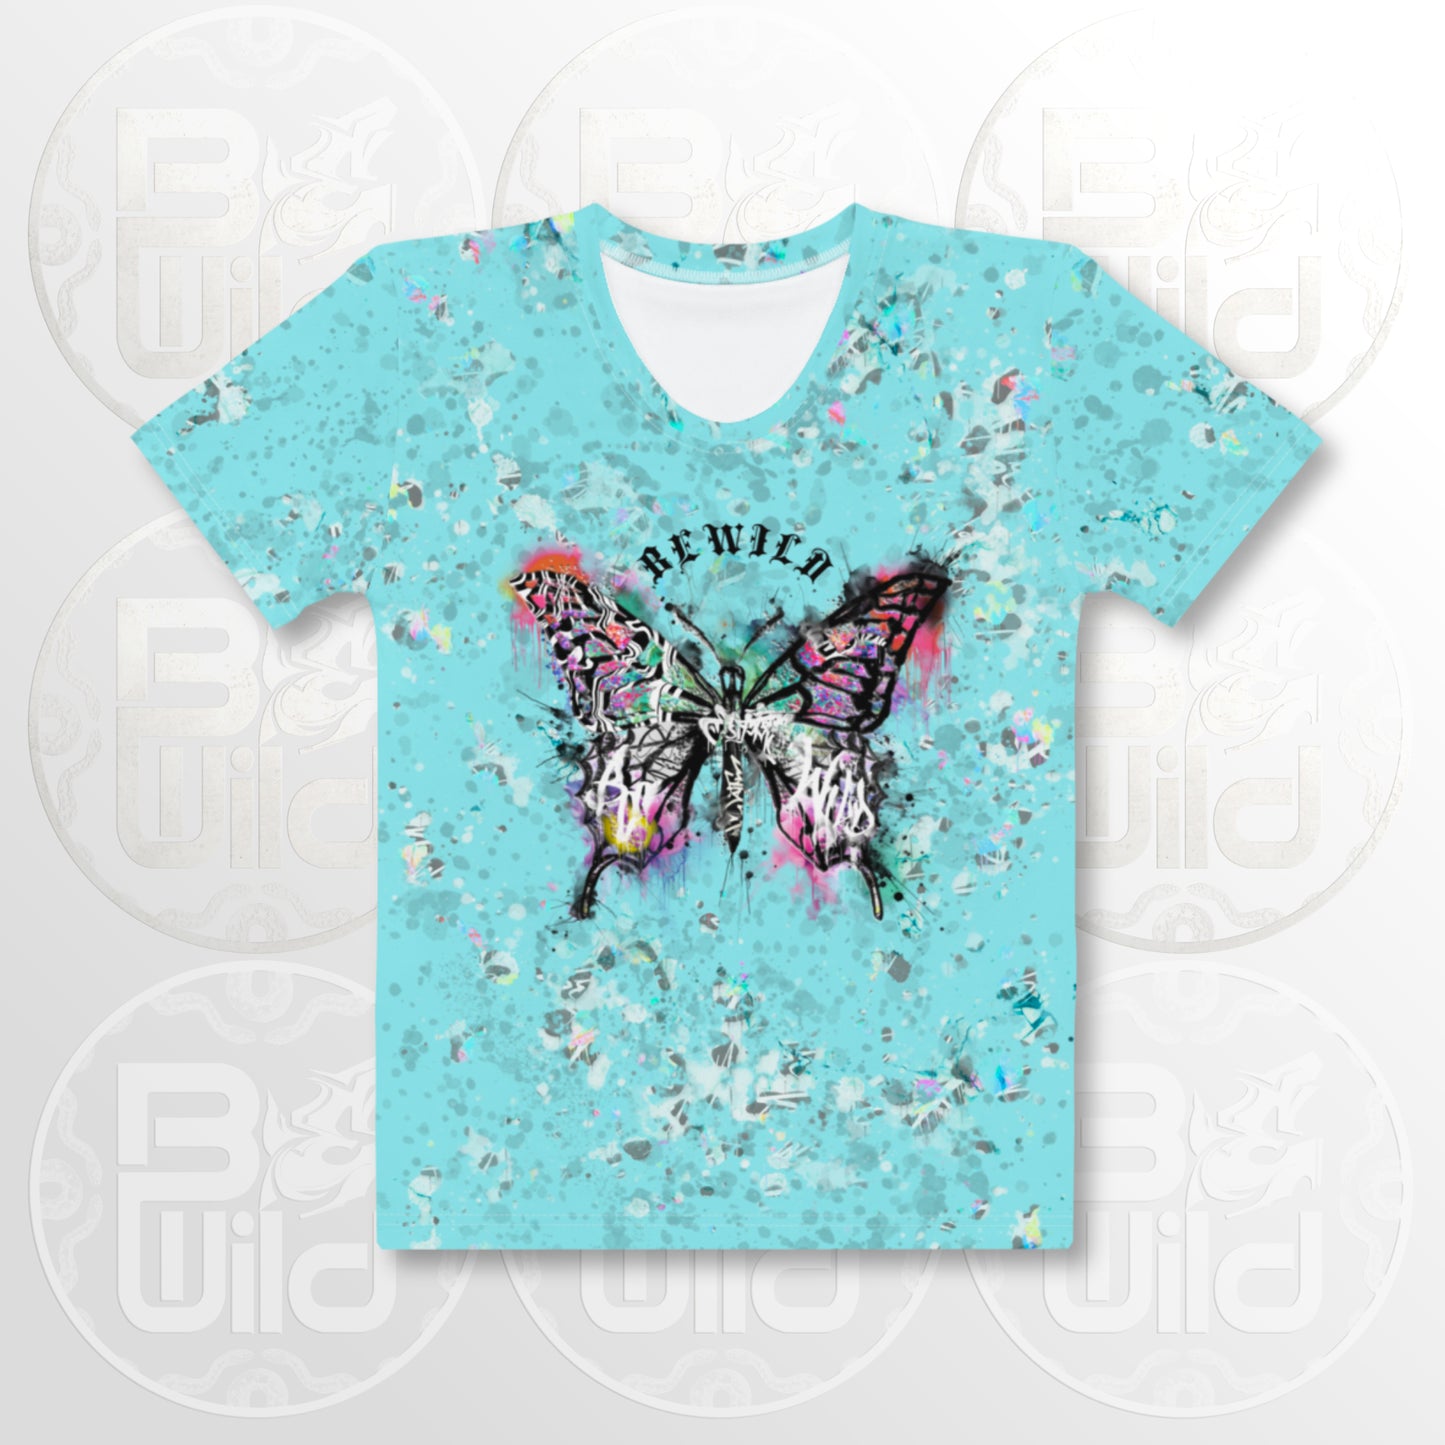 'Graffiti Butterfly' T-shirt - Summer Blue